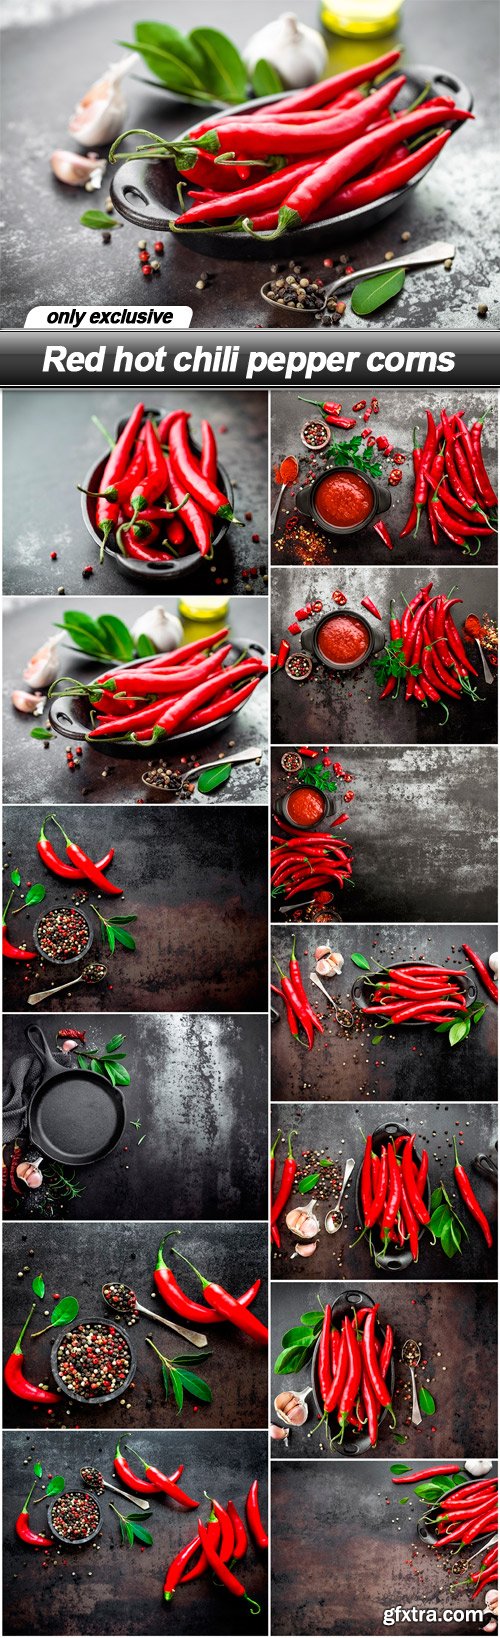 Red hot chili pepper corns - 13 UHQ JPEG